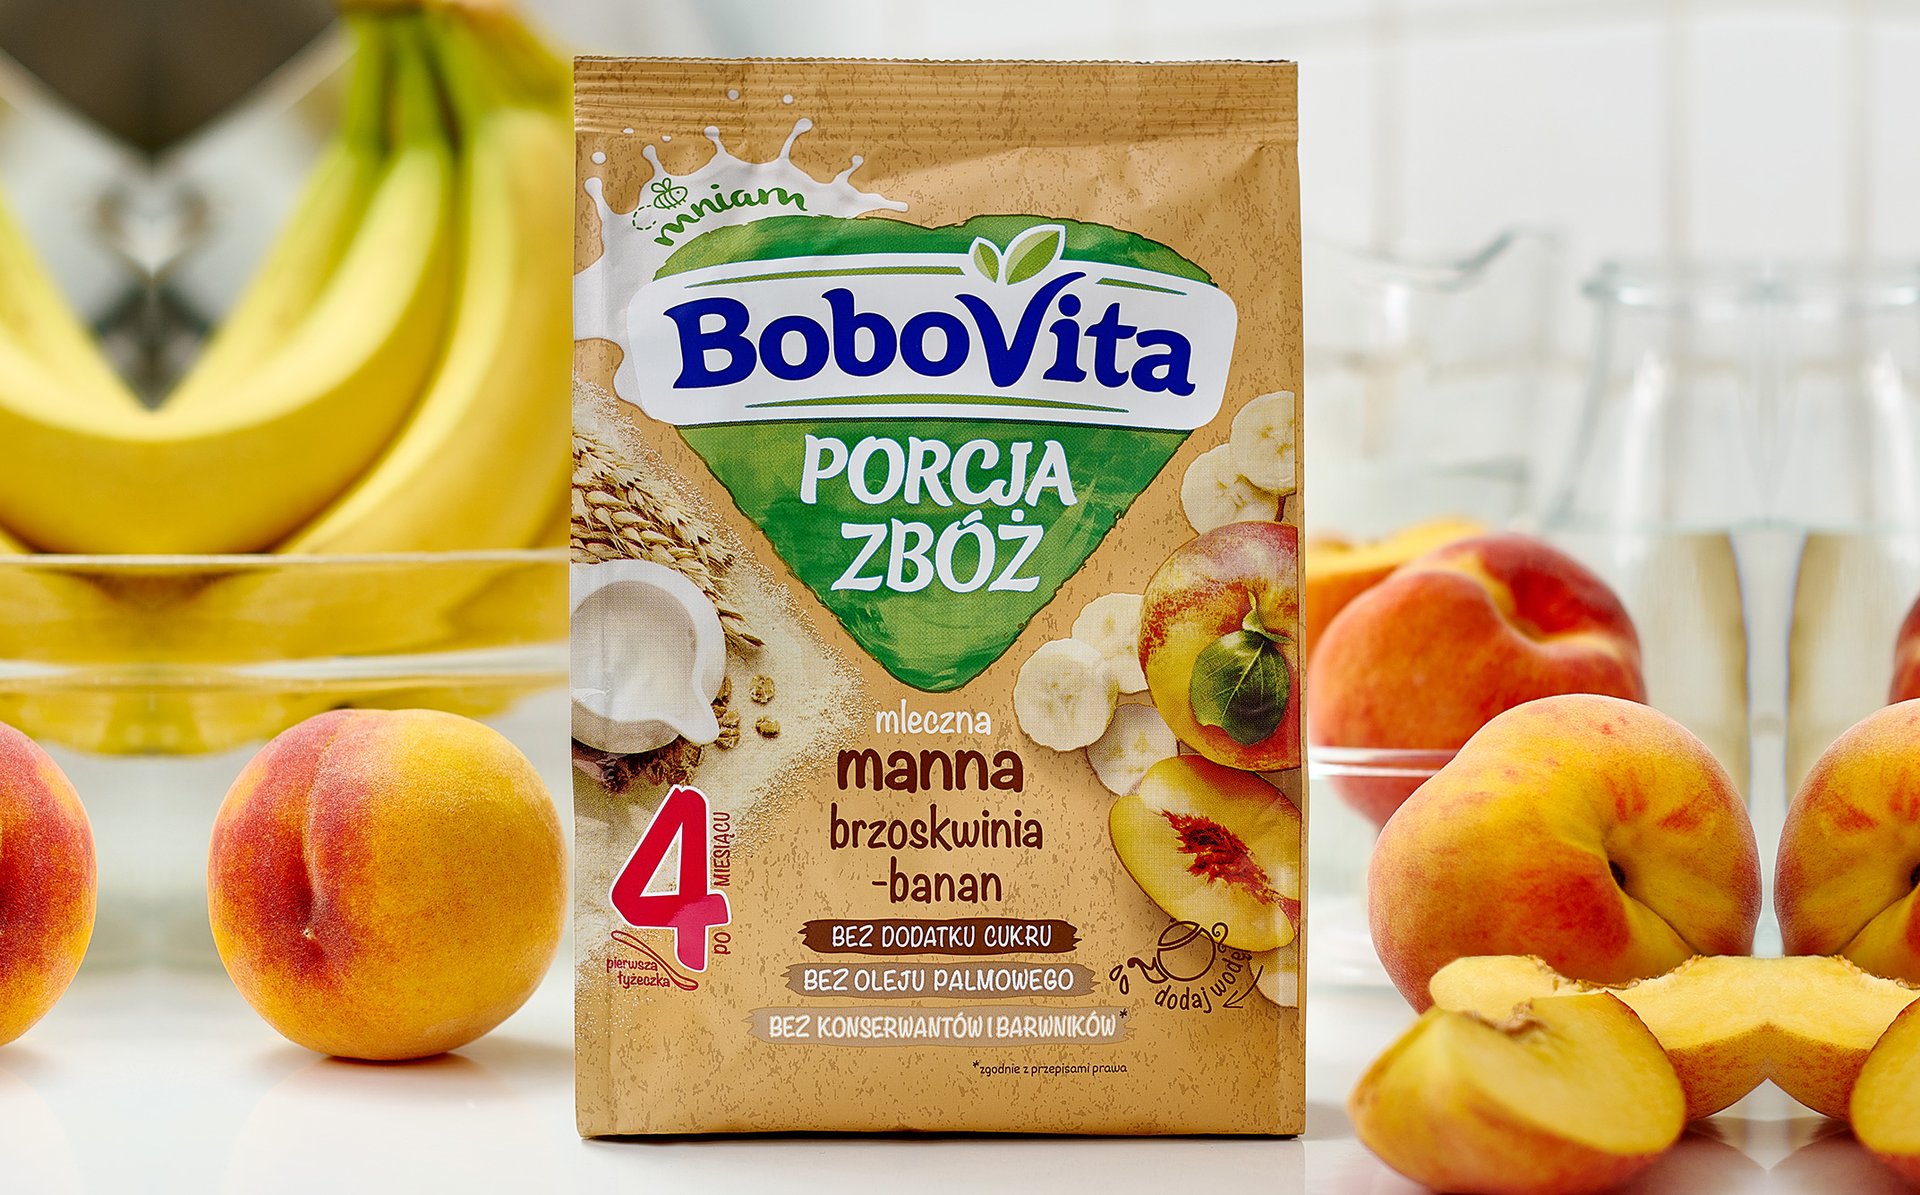 Kaszka Porcja Zboz mleczna manna brzoskwinia-banan